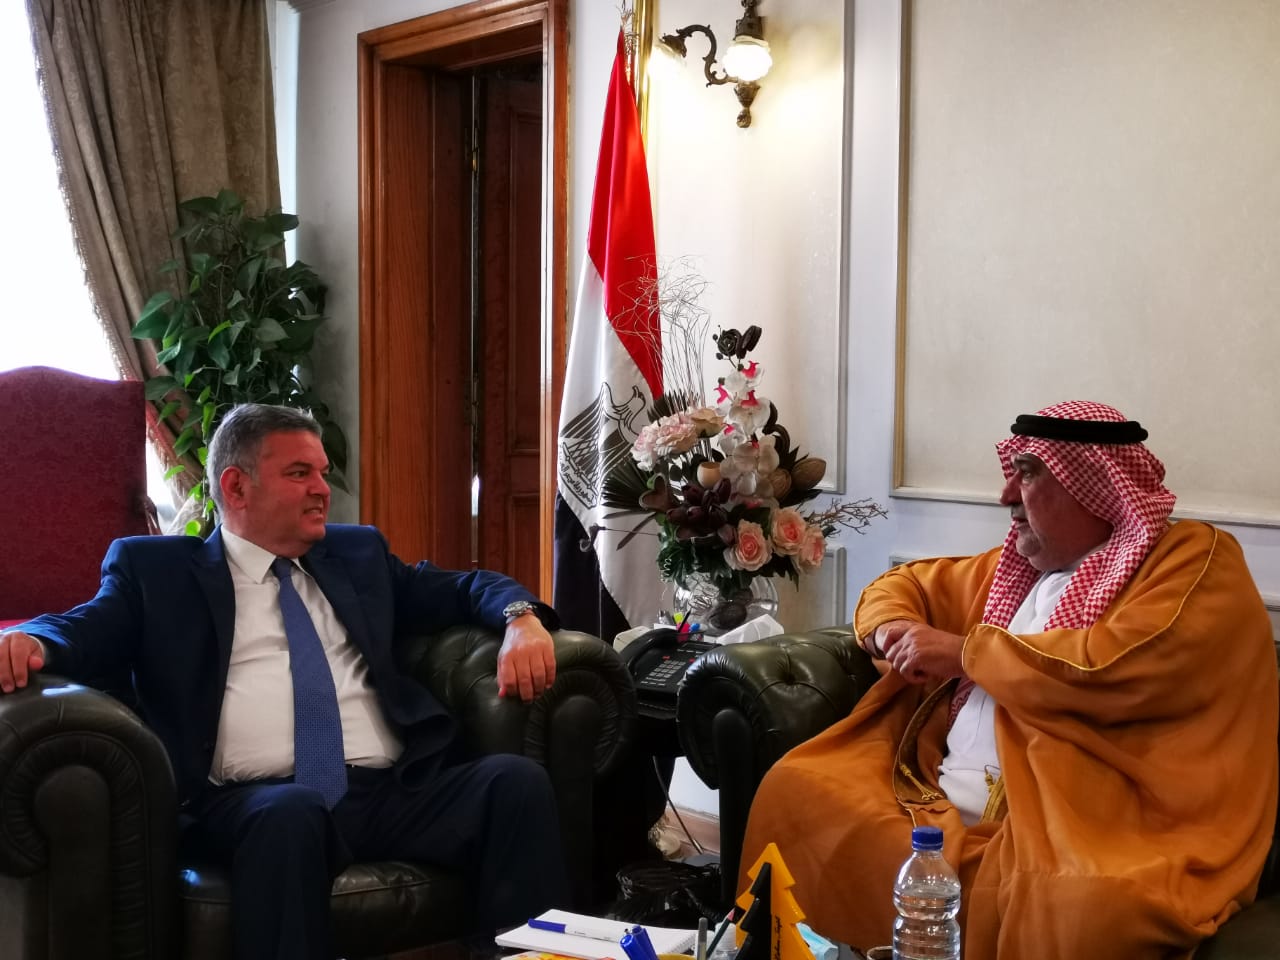 وزير قطاع الأعمال العام يلتقي رئيس الاتحاد العربي للاستثمار والتطوير العقاري لبحث فرص التعاون